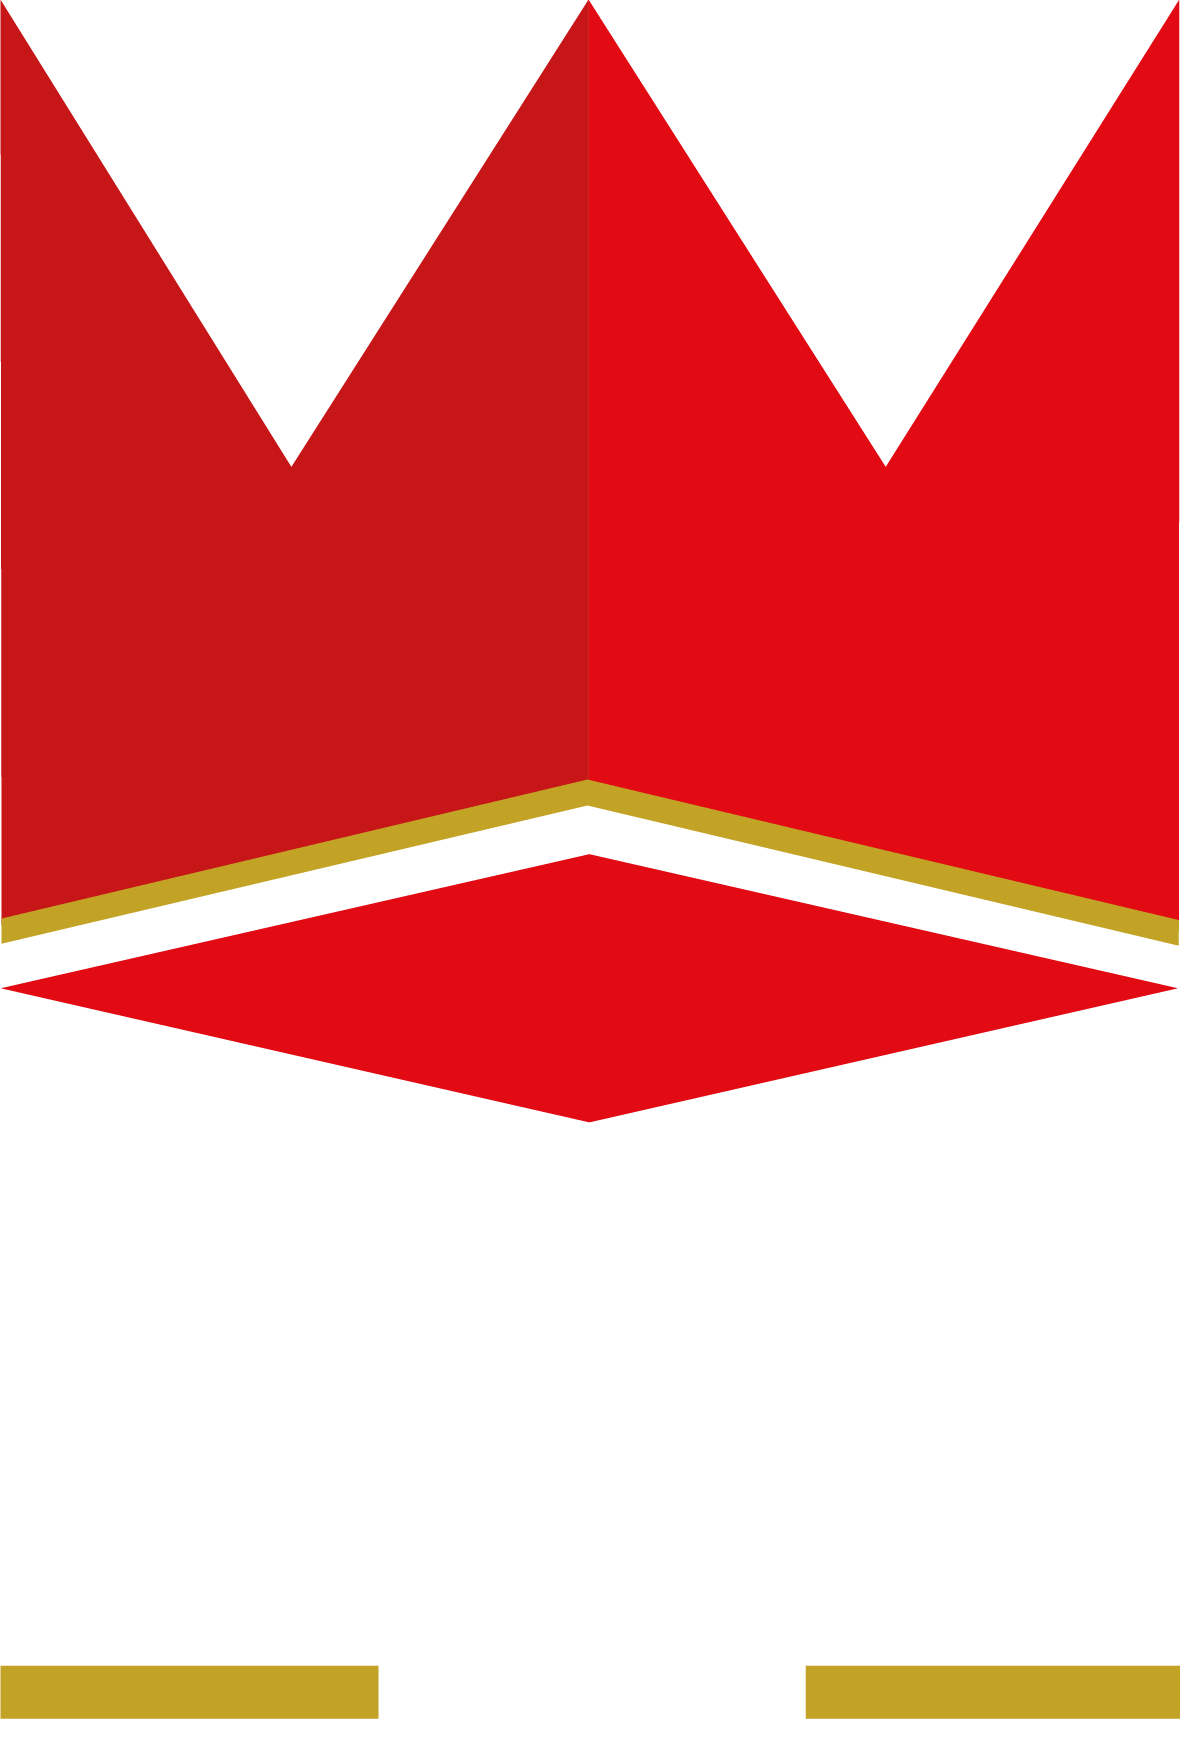 Bar League Pro